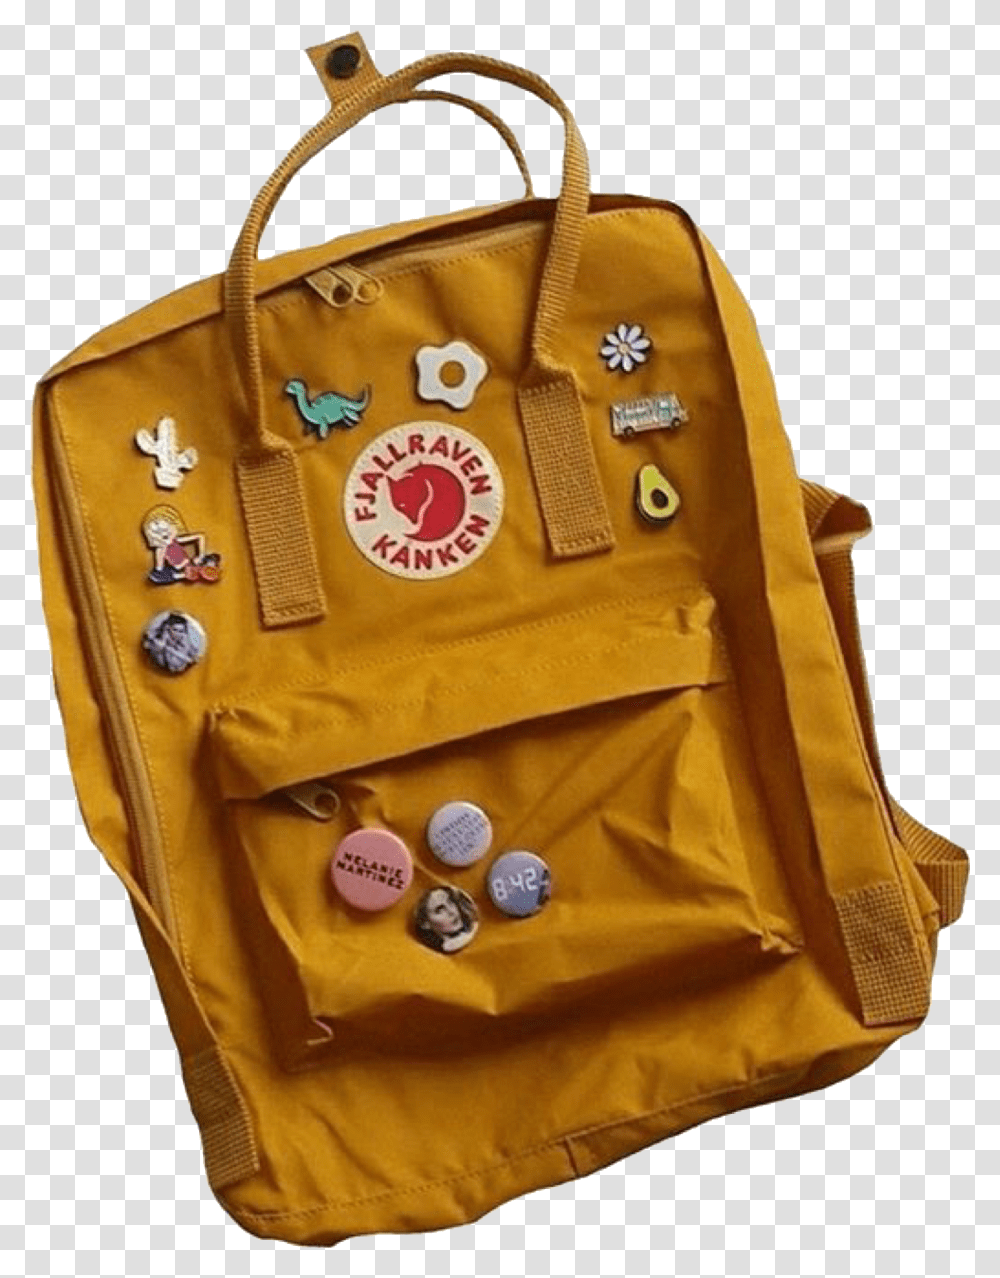 Clothes Pin Aesthetic Kanken Backpack, Apparel, Bag, Vest Transparent Png